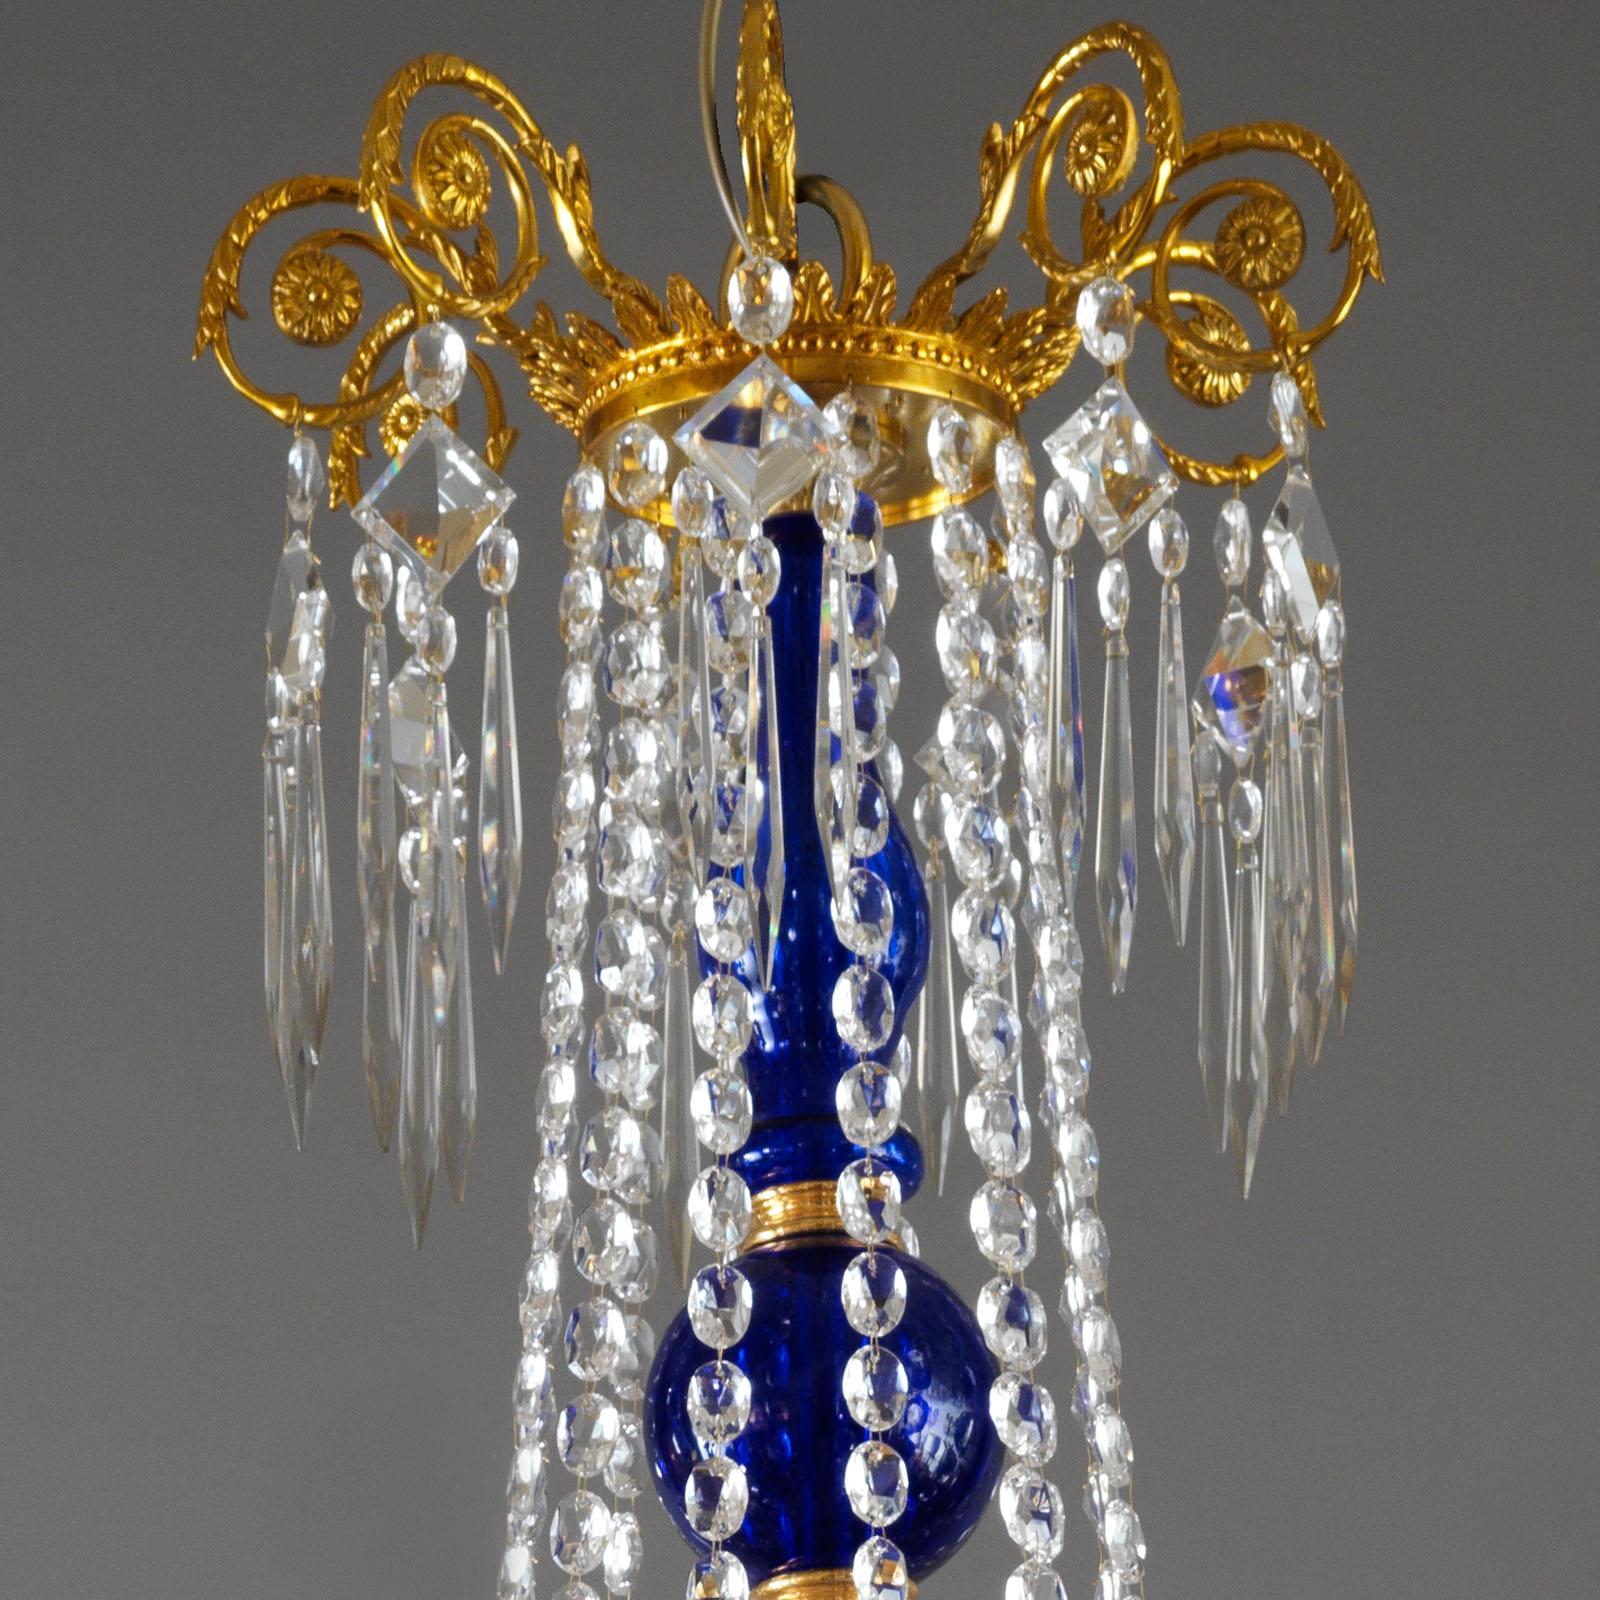 Dieser neoklassische Kronleuchter im baltischen Stil mit 54 Lichtern von Gherardo Degli Albizzi ist mit kobaltblauem Glas verziert.
An der eleganten Krone hängen böhmische Kristalltropfen, die von einem kobaltblauen Glasmittelstück getragen